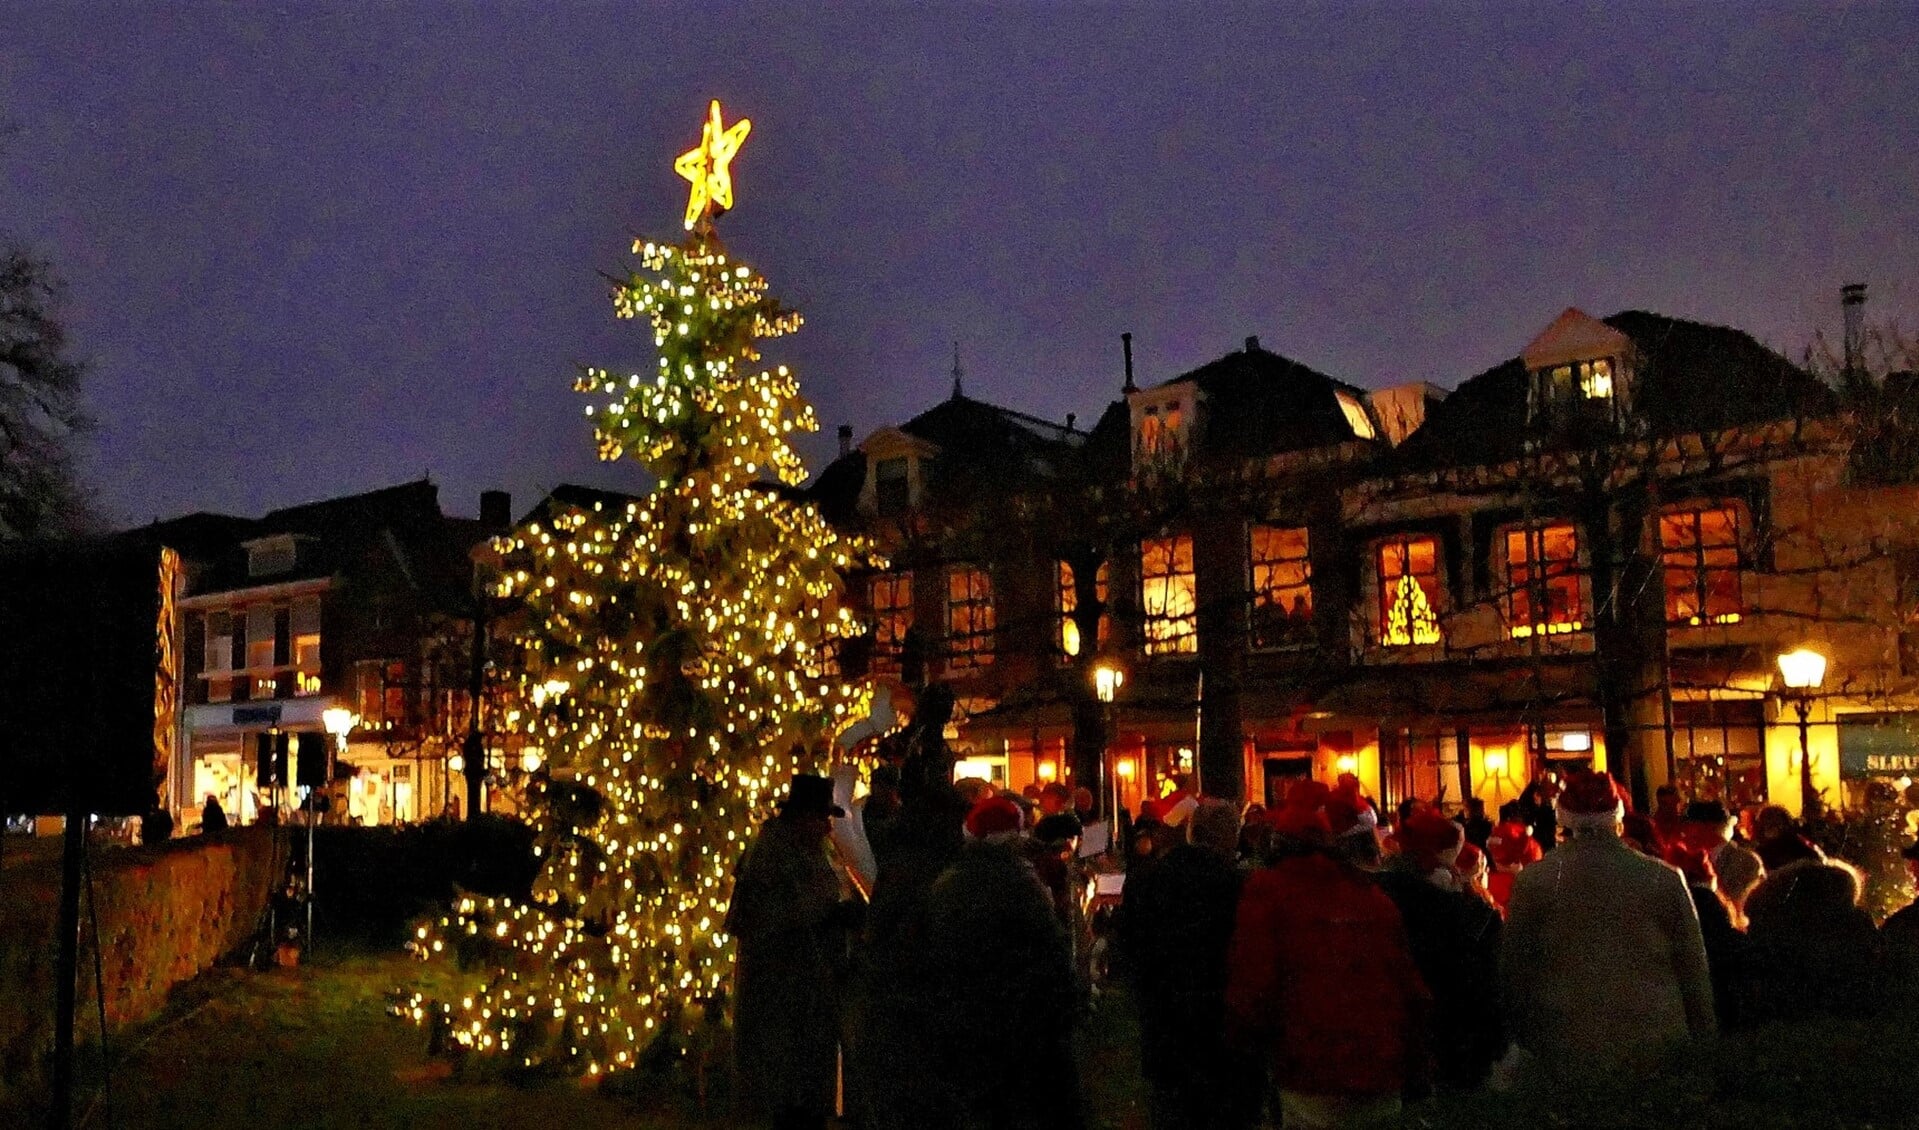 De kerstboom uit Hranice met ontstoken verlichting bij de Oude Kerk aan de Herenstraat in Voorburg (foto: Ot Douwes).